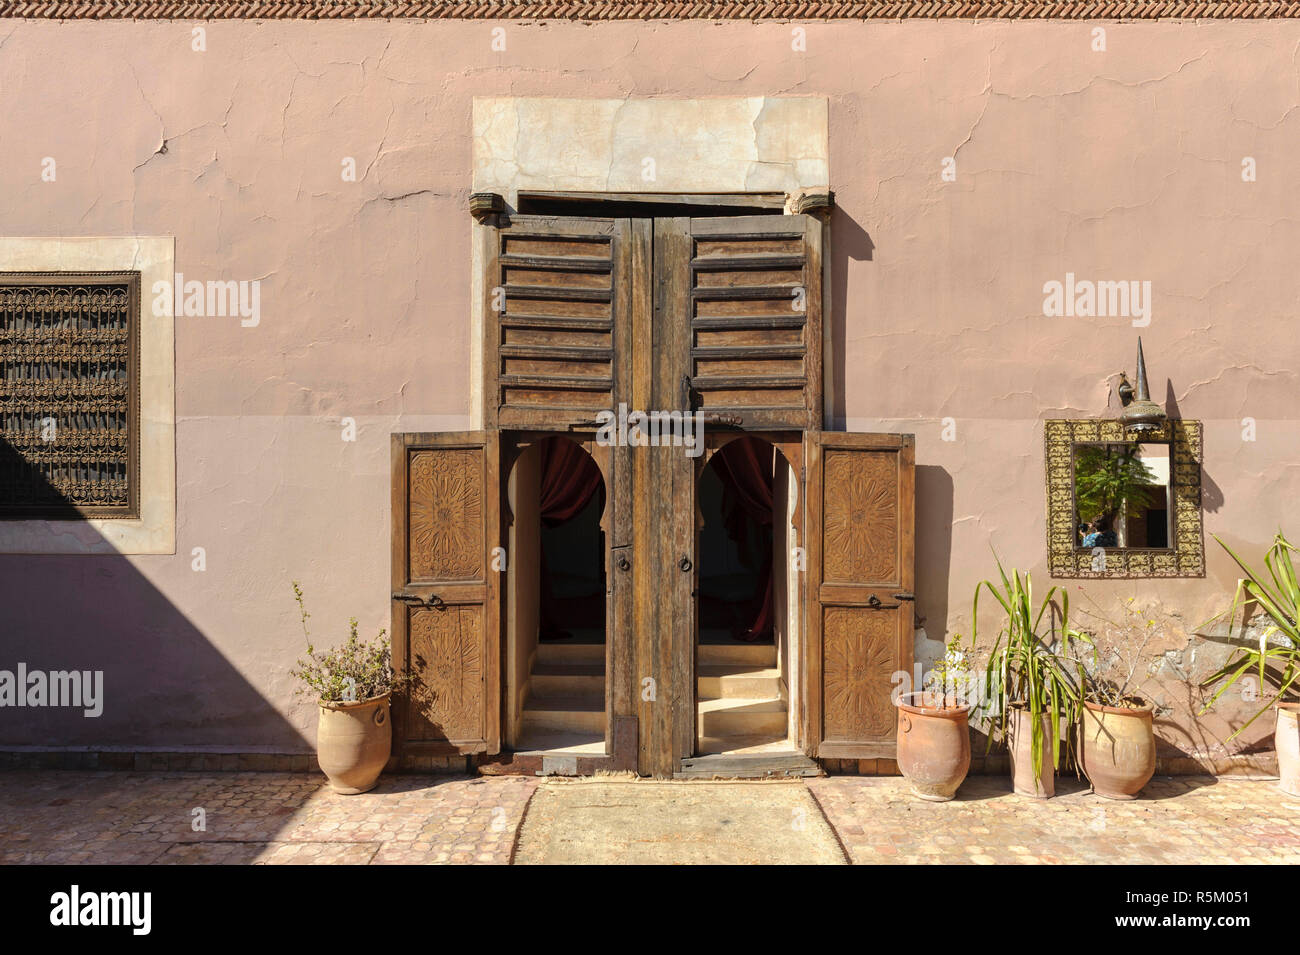 01-03-15, Marrakech, Marocco. Tipica vecchia porta di legno e finestre di una casa in sub-Atlas regione berbera. Foto: ©Simone Grosset Foto Stock